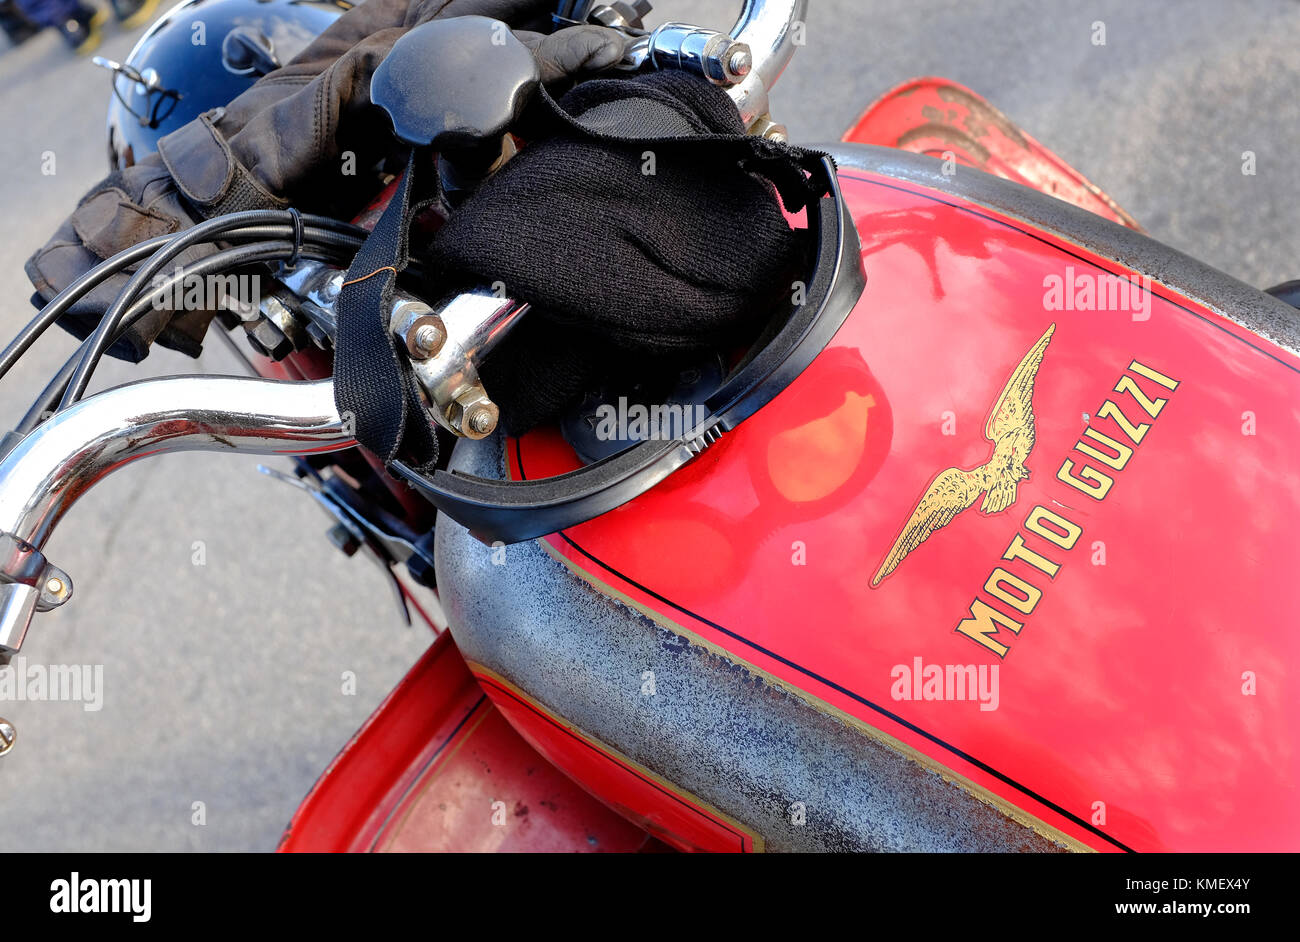 Moto Guzzi vintage motorcycle réservoir de carburant, Florence, Italie Banque D'Images